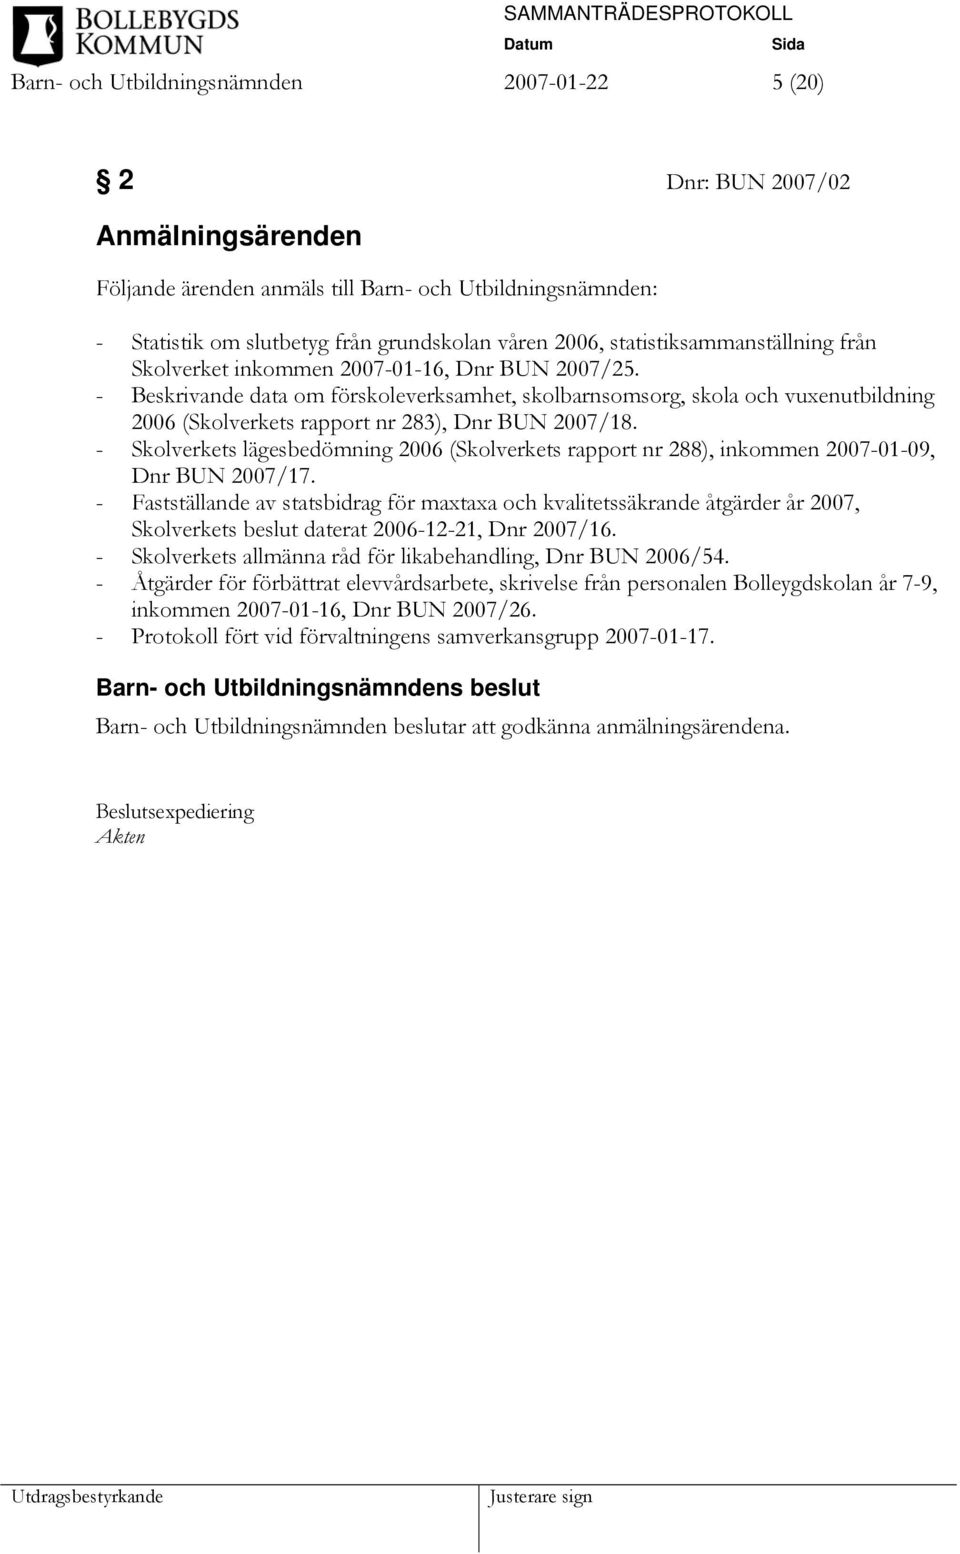 - Beskrivande data om förskoleverksamhet, skolbarnsomsorg, skola och vuxenutbildning 2006 (Skolverkets rapport nr 283), Dnr BUN 2007/18.